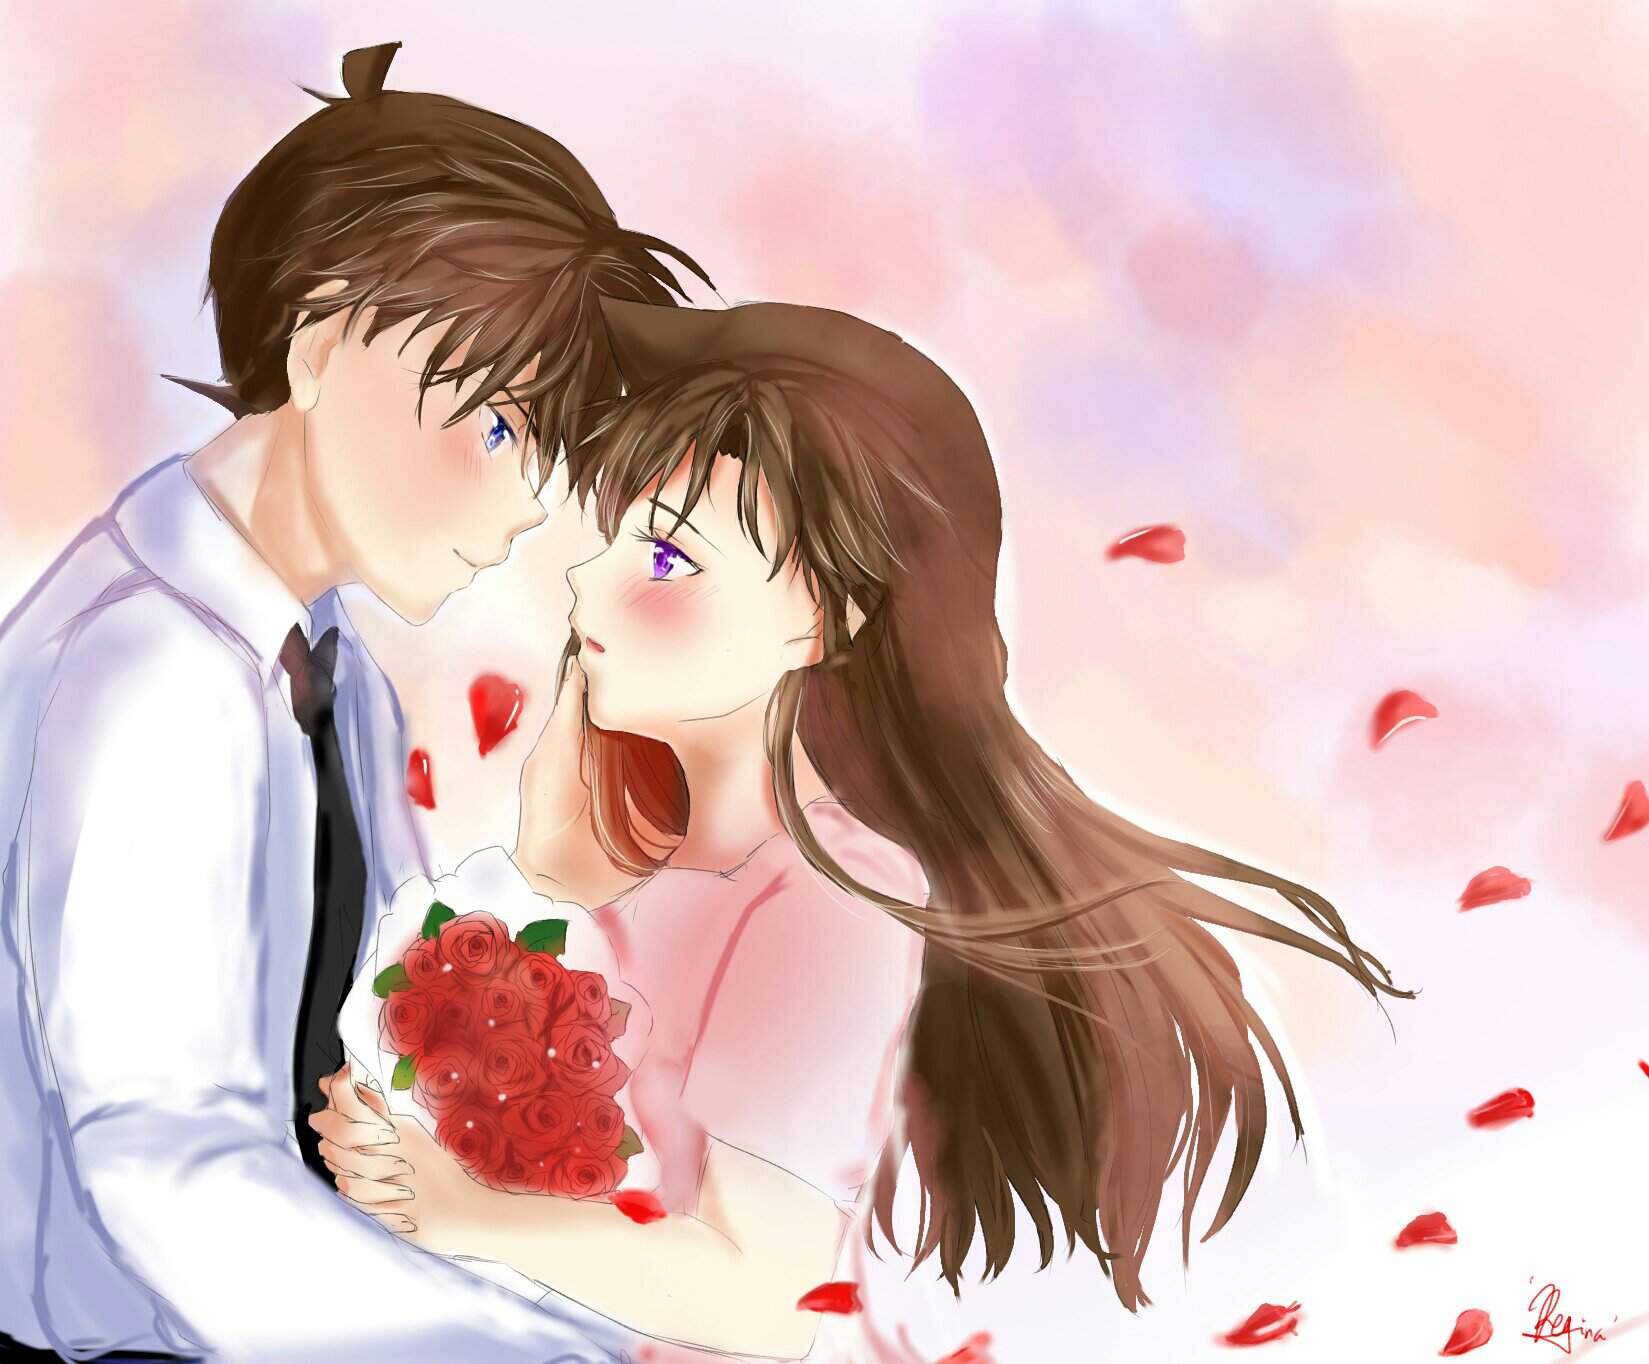 Hình Shinichi và Ran hôn nhau đẹp